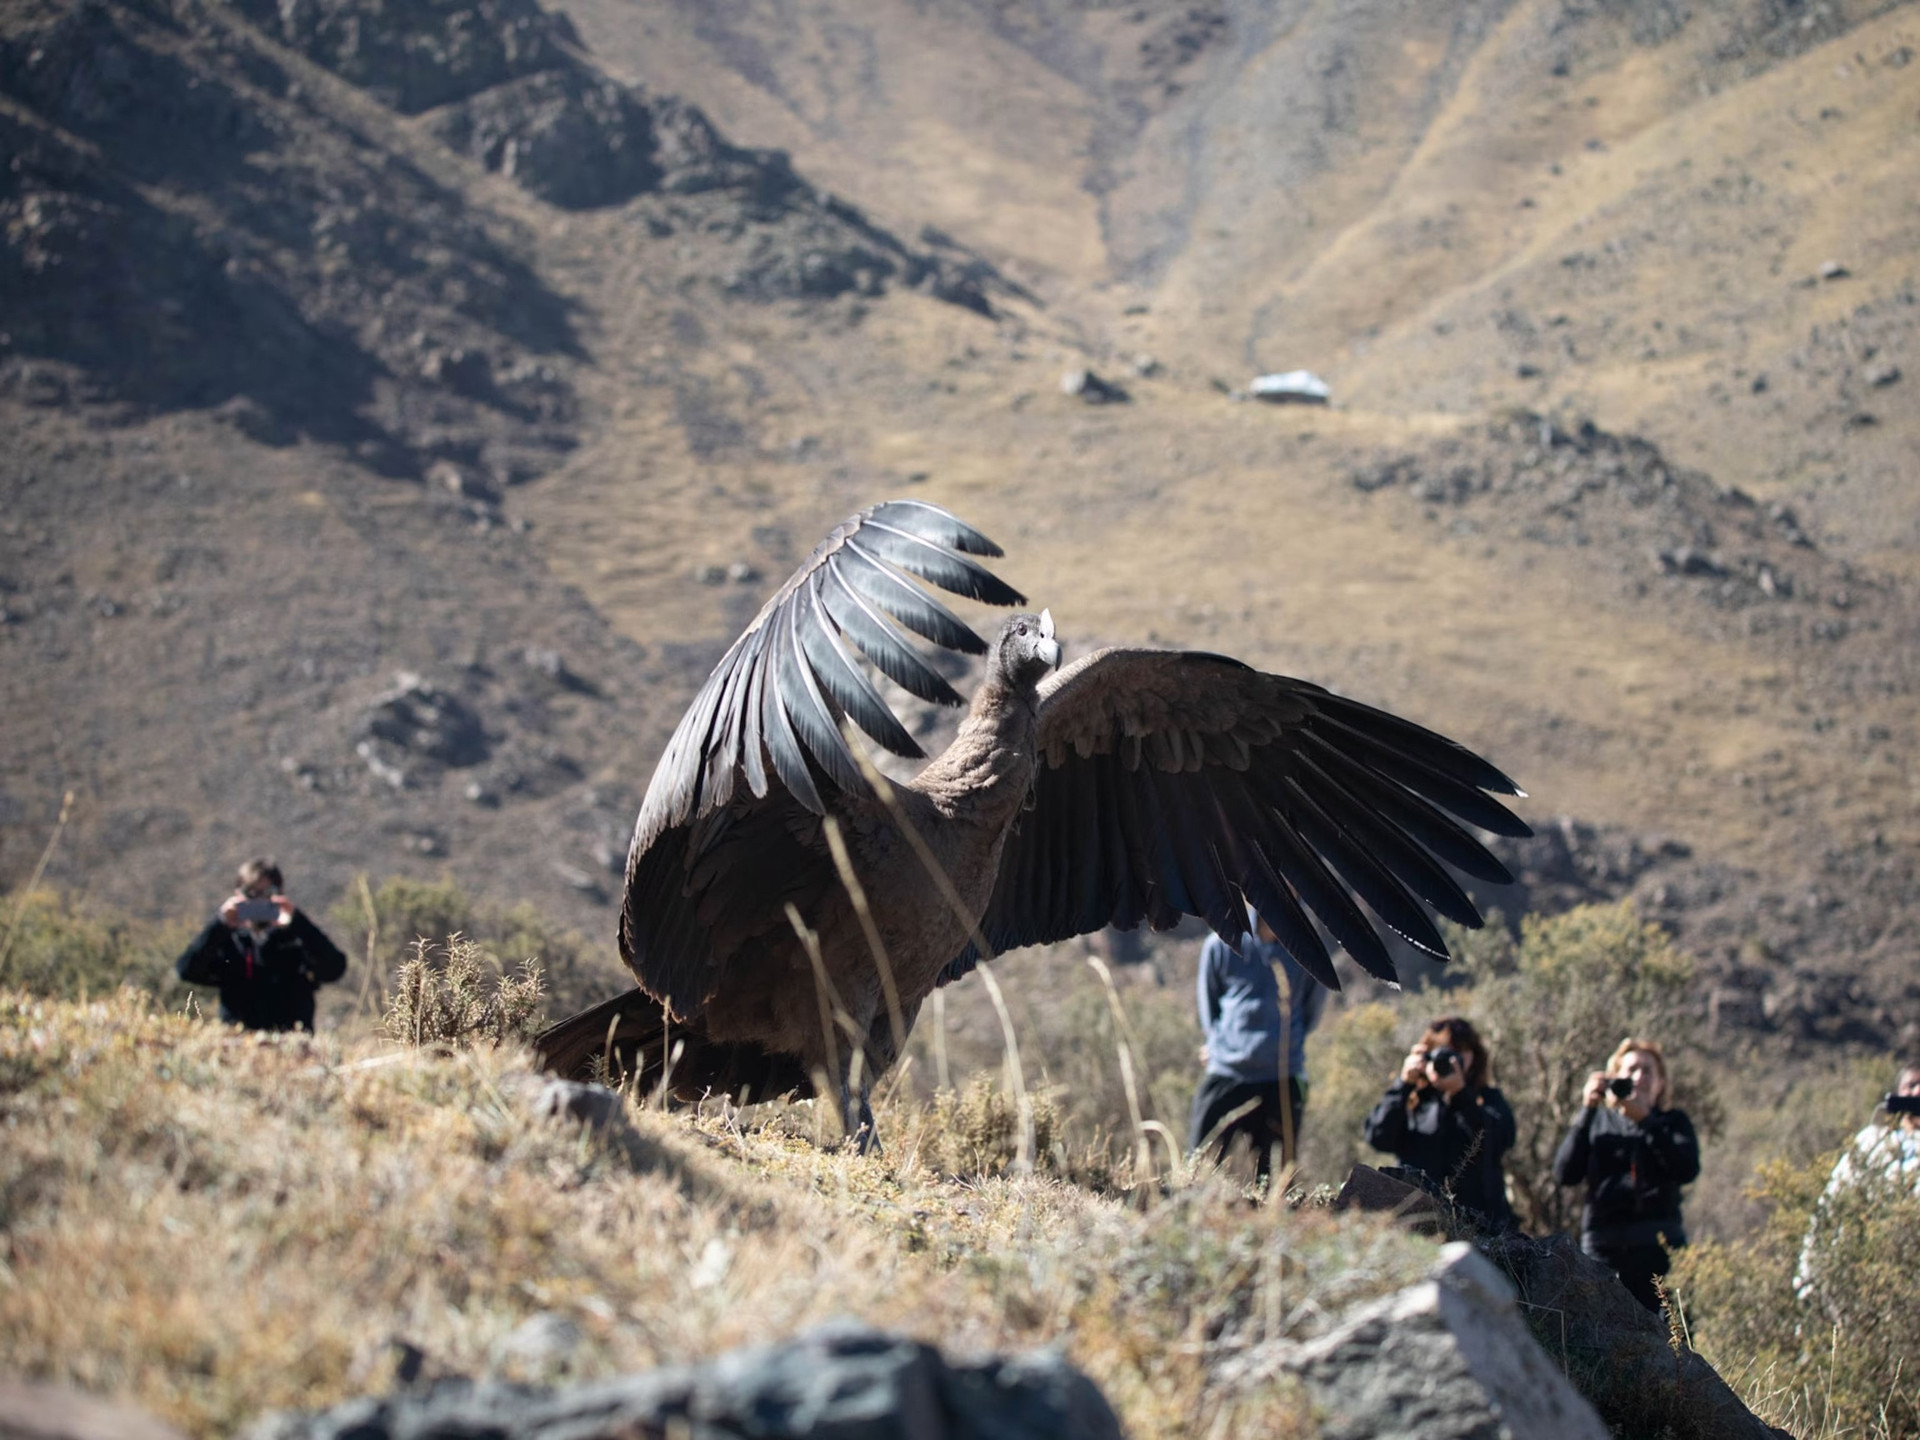 Nghiên cứu đã phát hiện thần ưng Andes có thể bay 5 giờ đồng hồ mà không cần vỗ cánh kể từ khi cất cánh bay, quãng đường dài 172km. Ảnh: